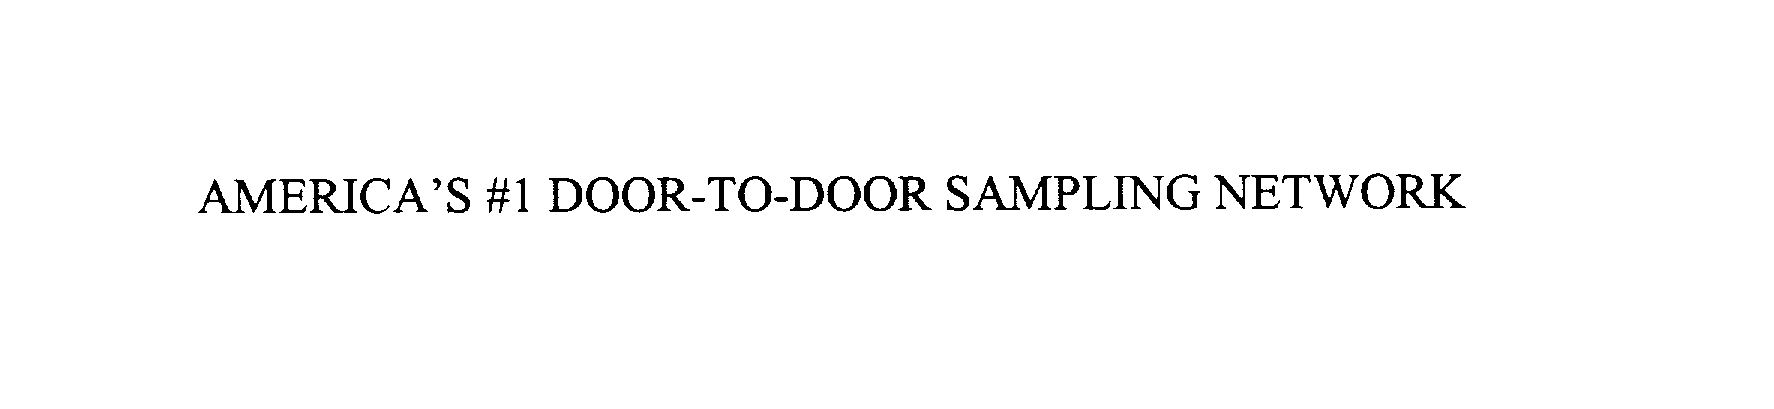  AMERICA' S #1 DOOR-TO-DOOR SAMPLING NETWORK